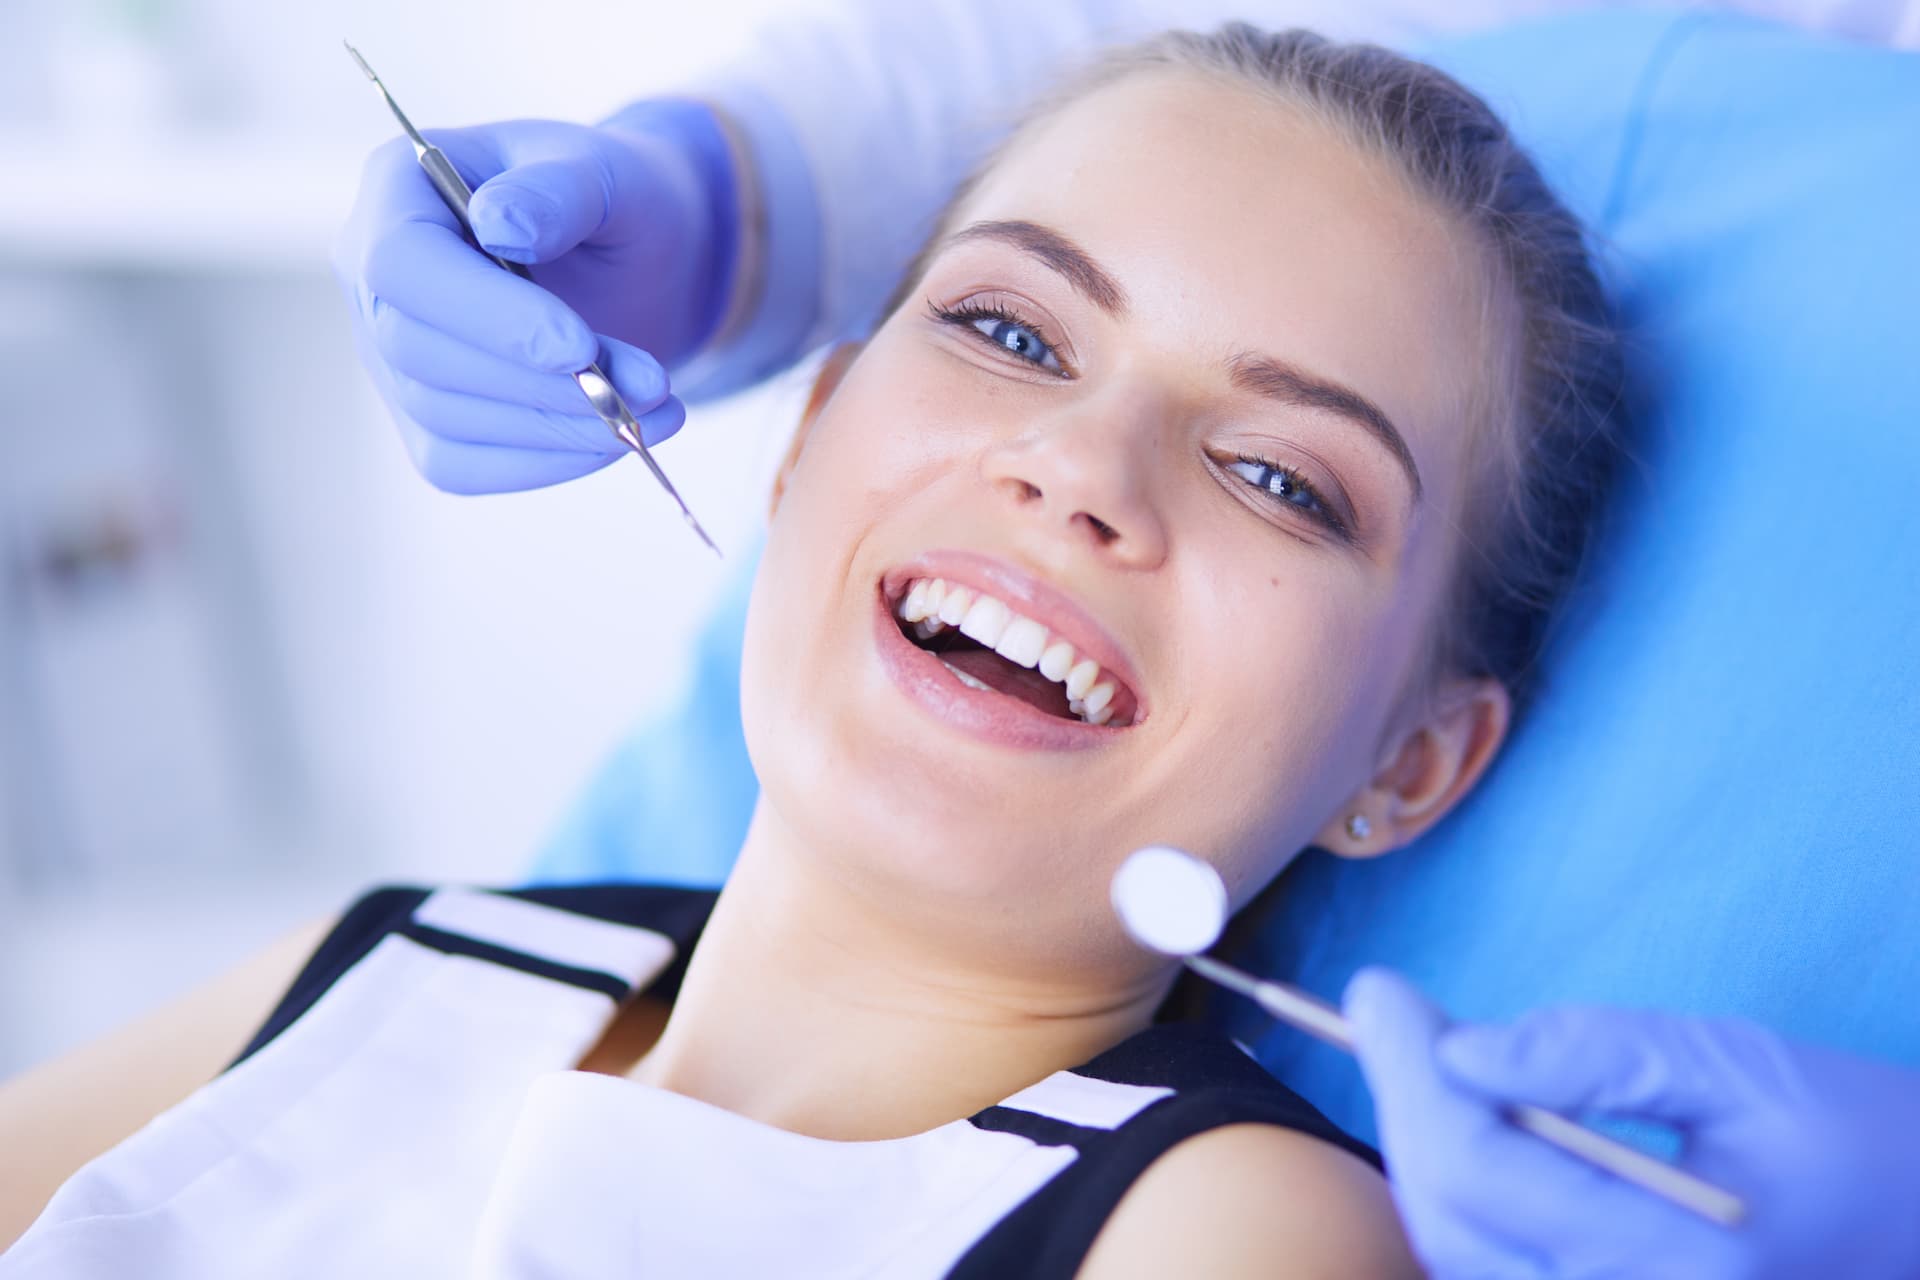 Turkiye all on 4 dental implants procedure